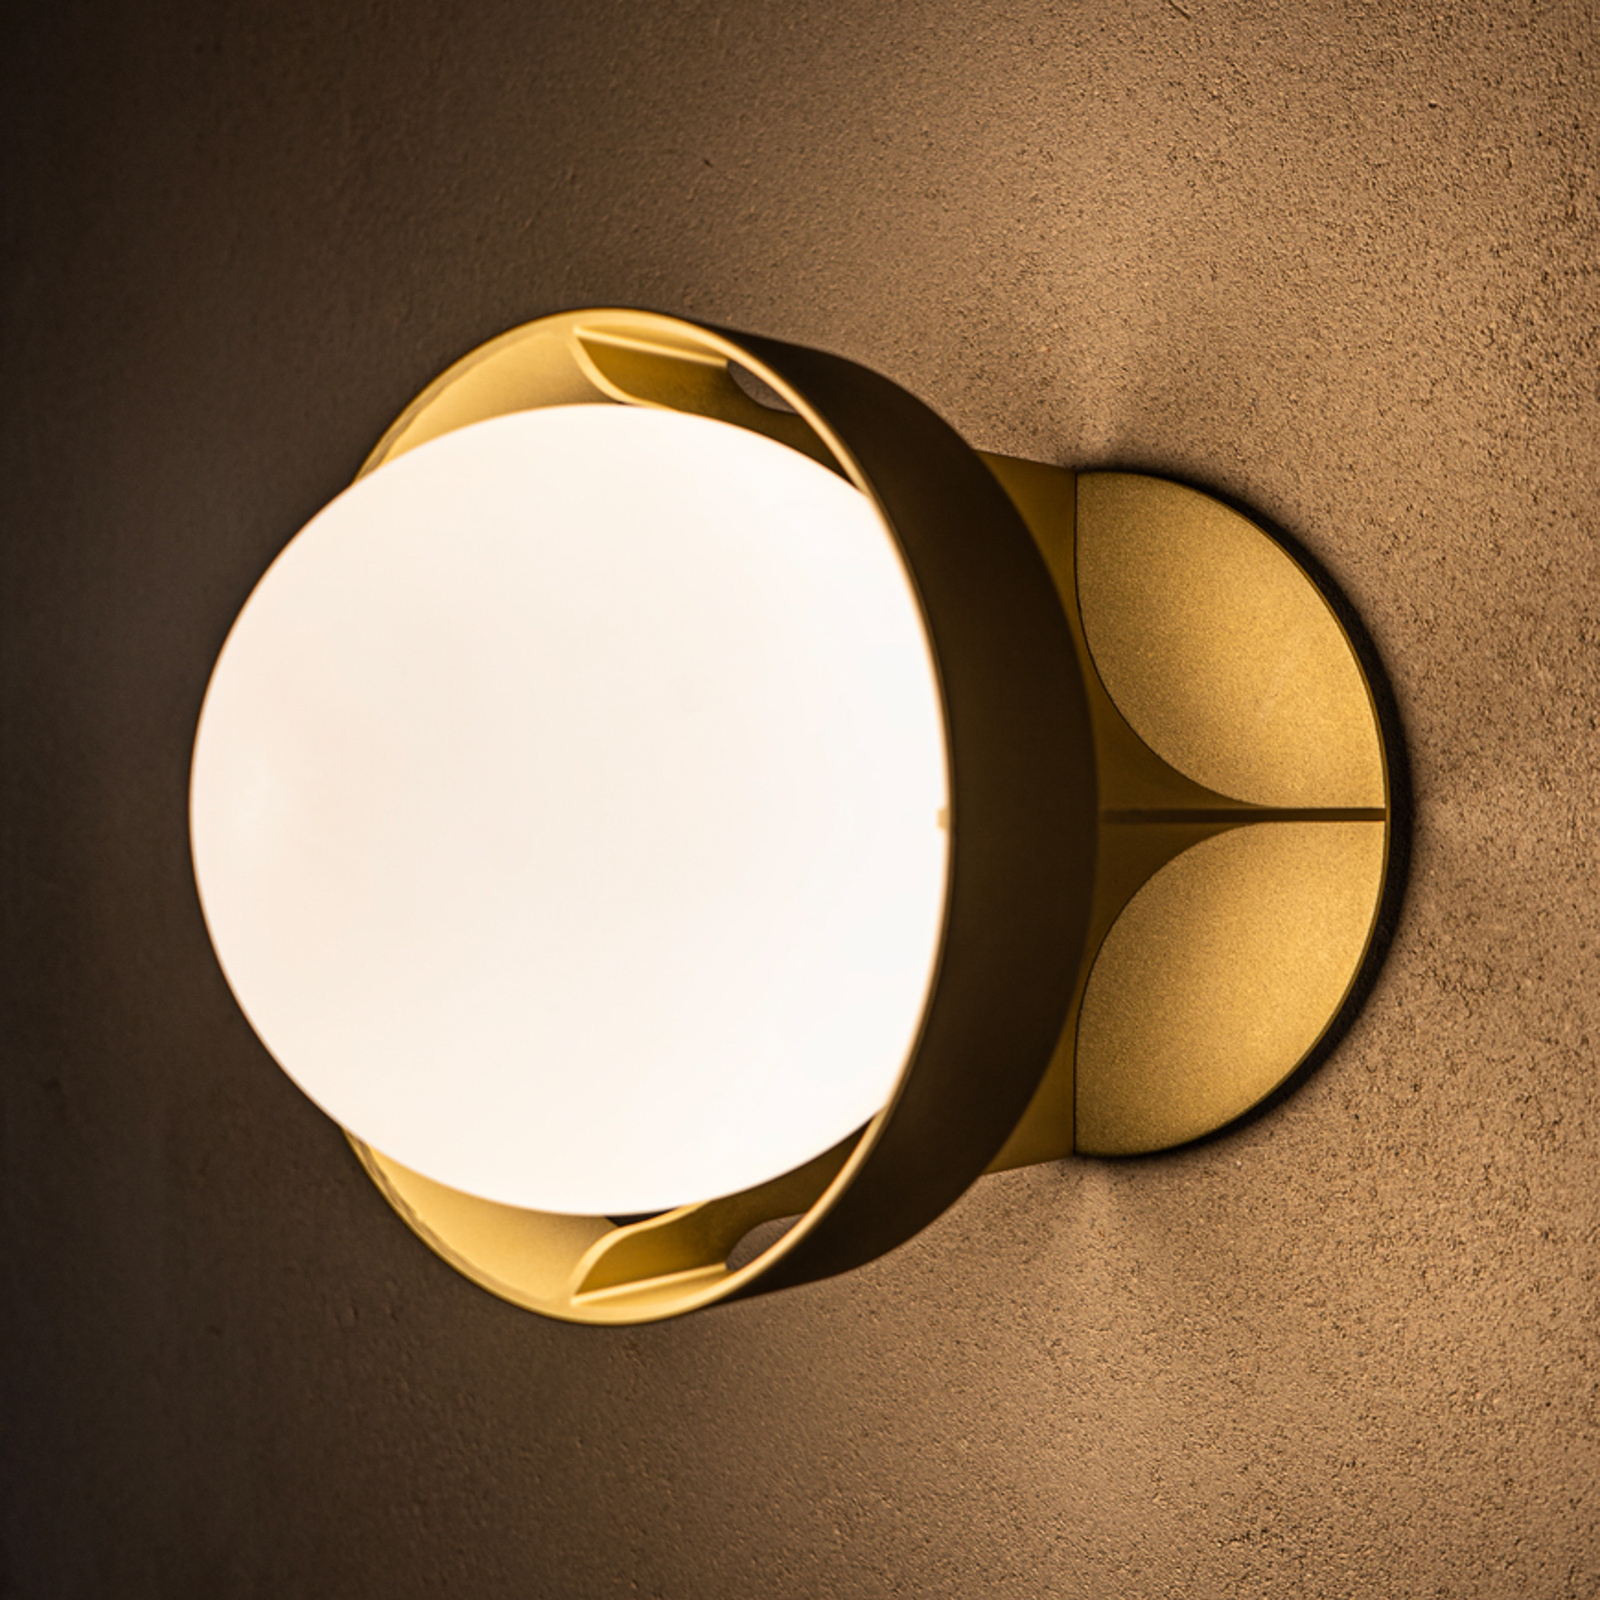 Tala wall light Loop Large, aluminium, LED globe bulb, gold